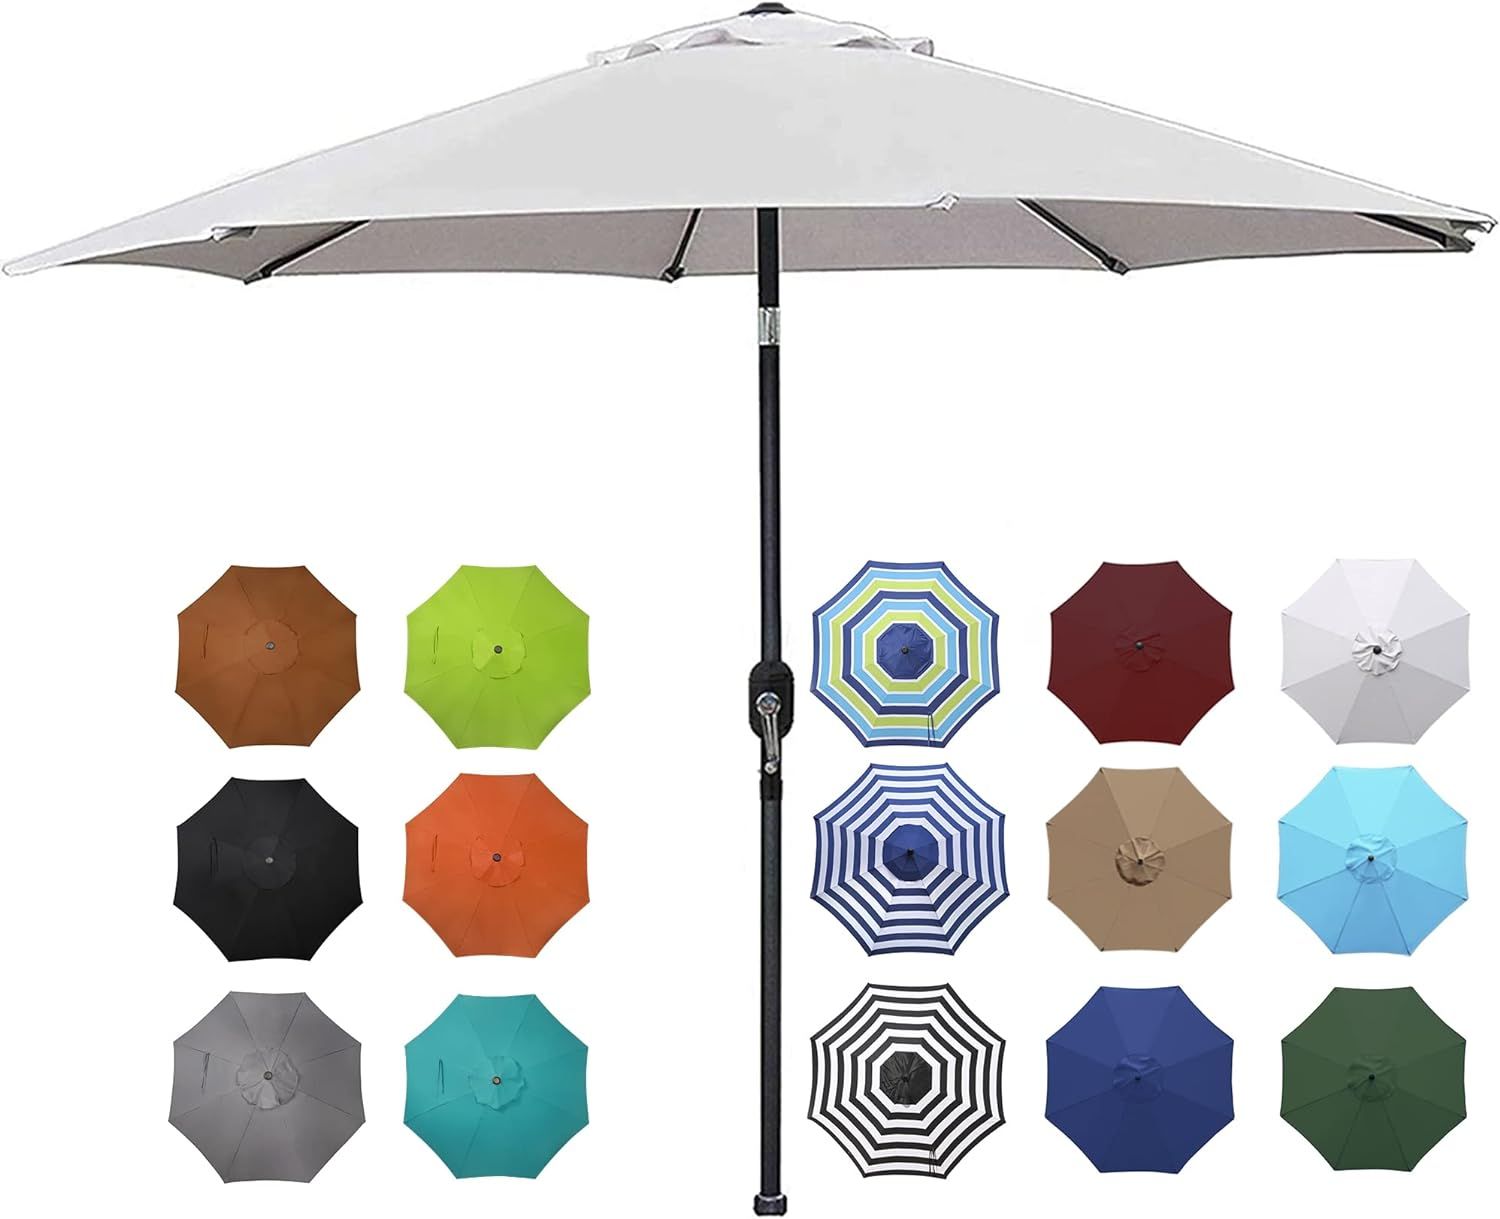 Blissun 9' Outdoor Aluminum Patio Umbrella, Striped Patio Umbrella, Market Striped Umbrella with ... | Amazon (US)